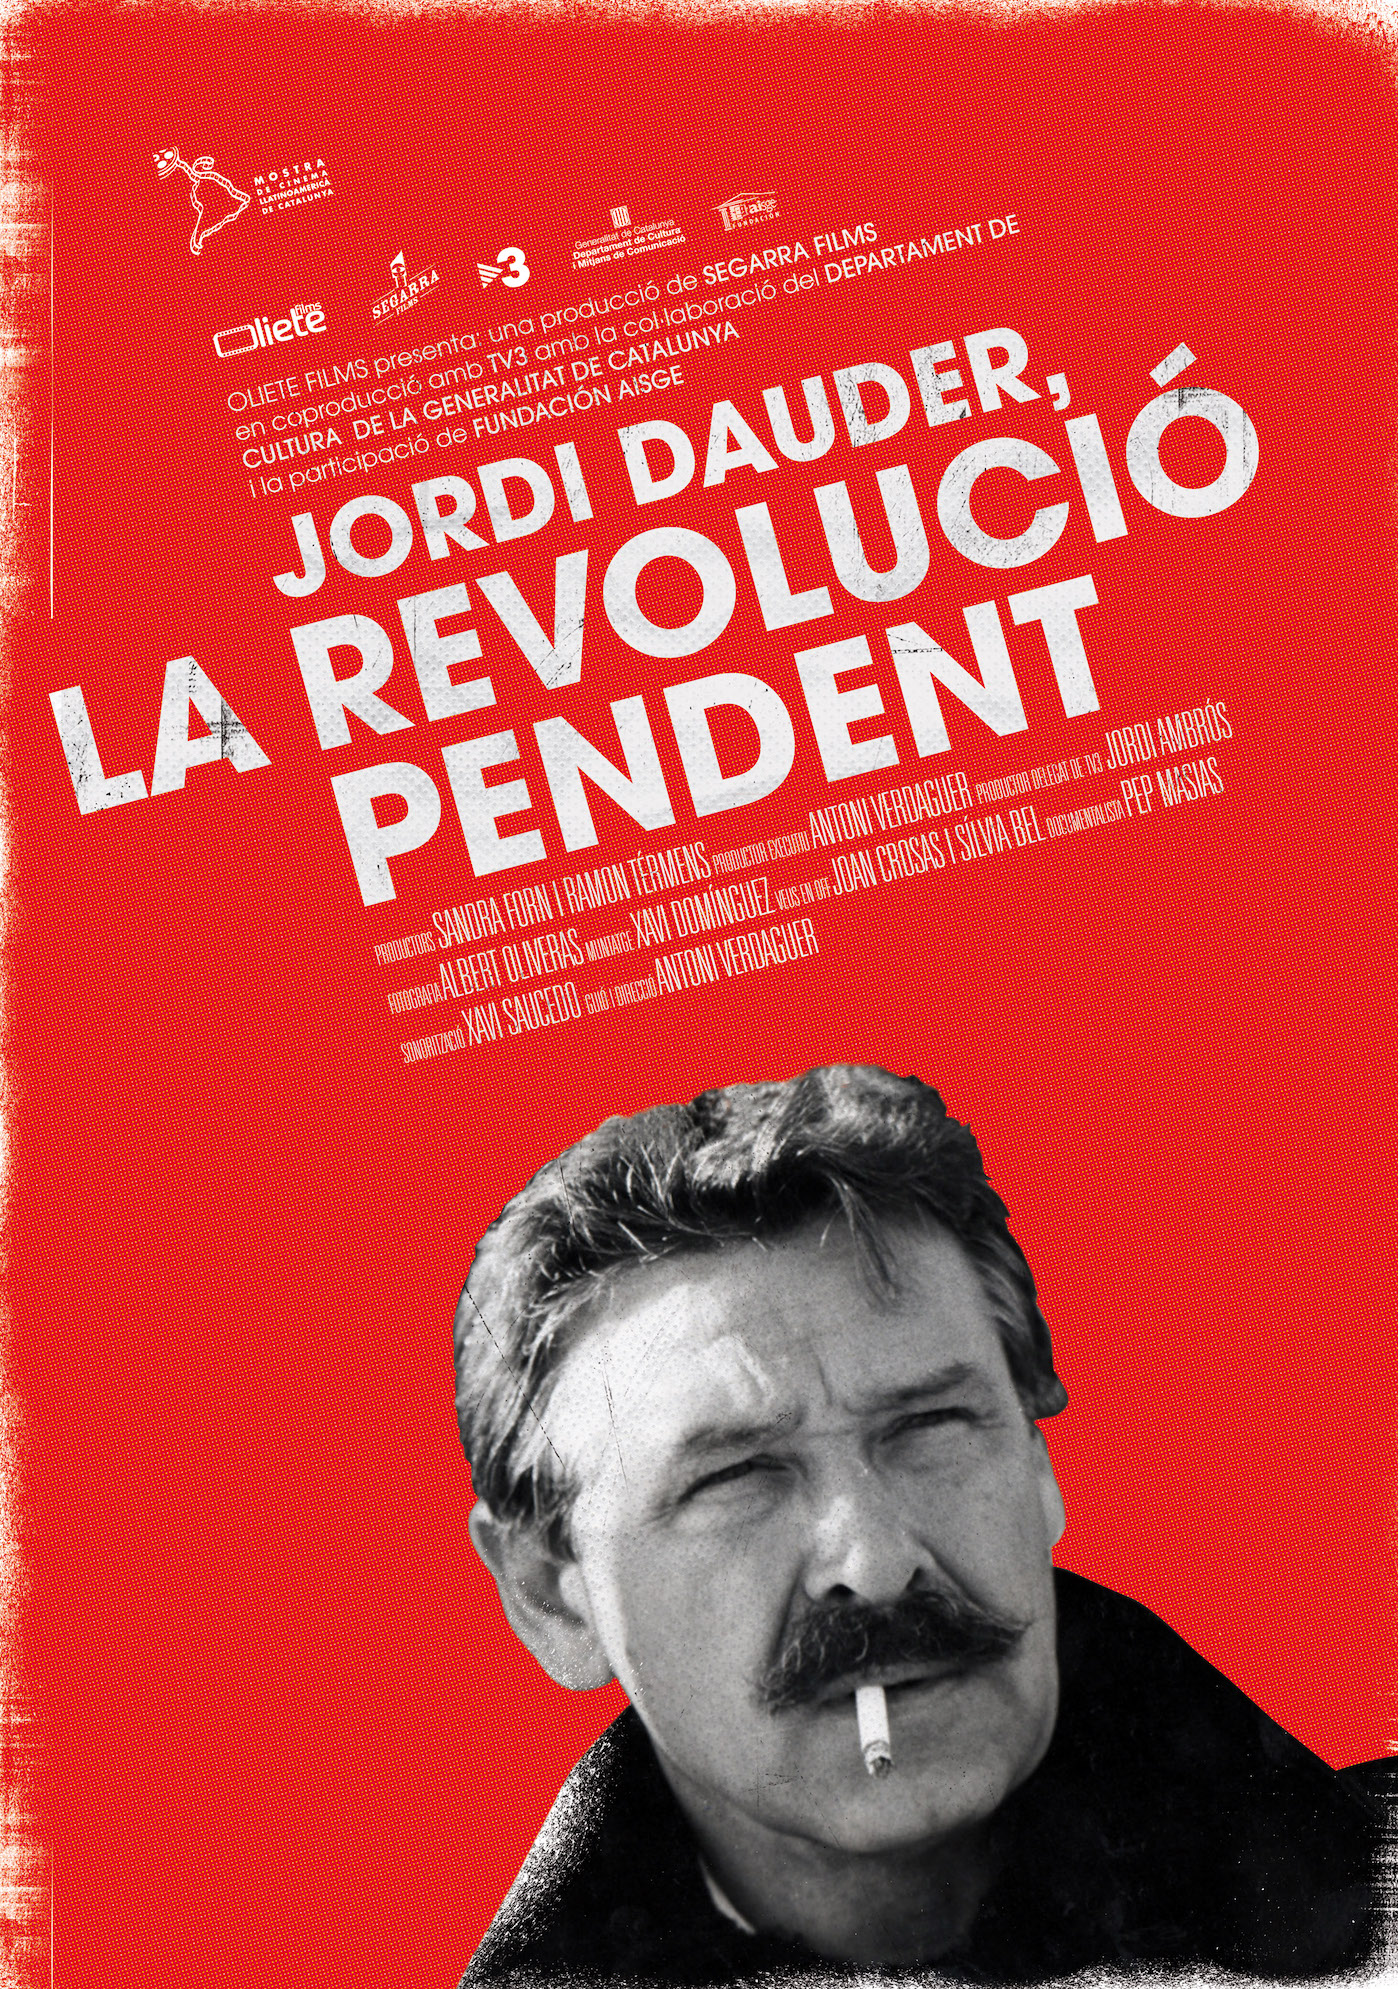 Jordi Dauder, La revolució pendent